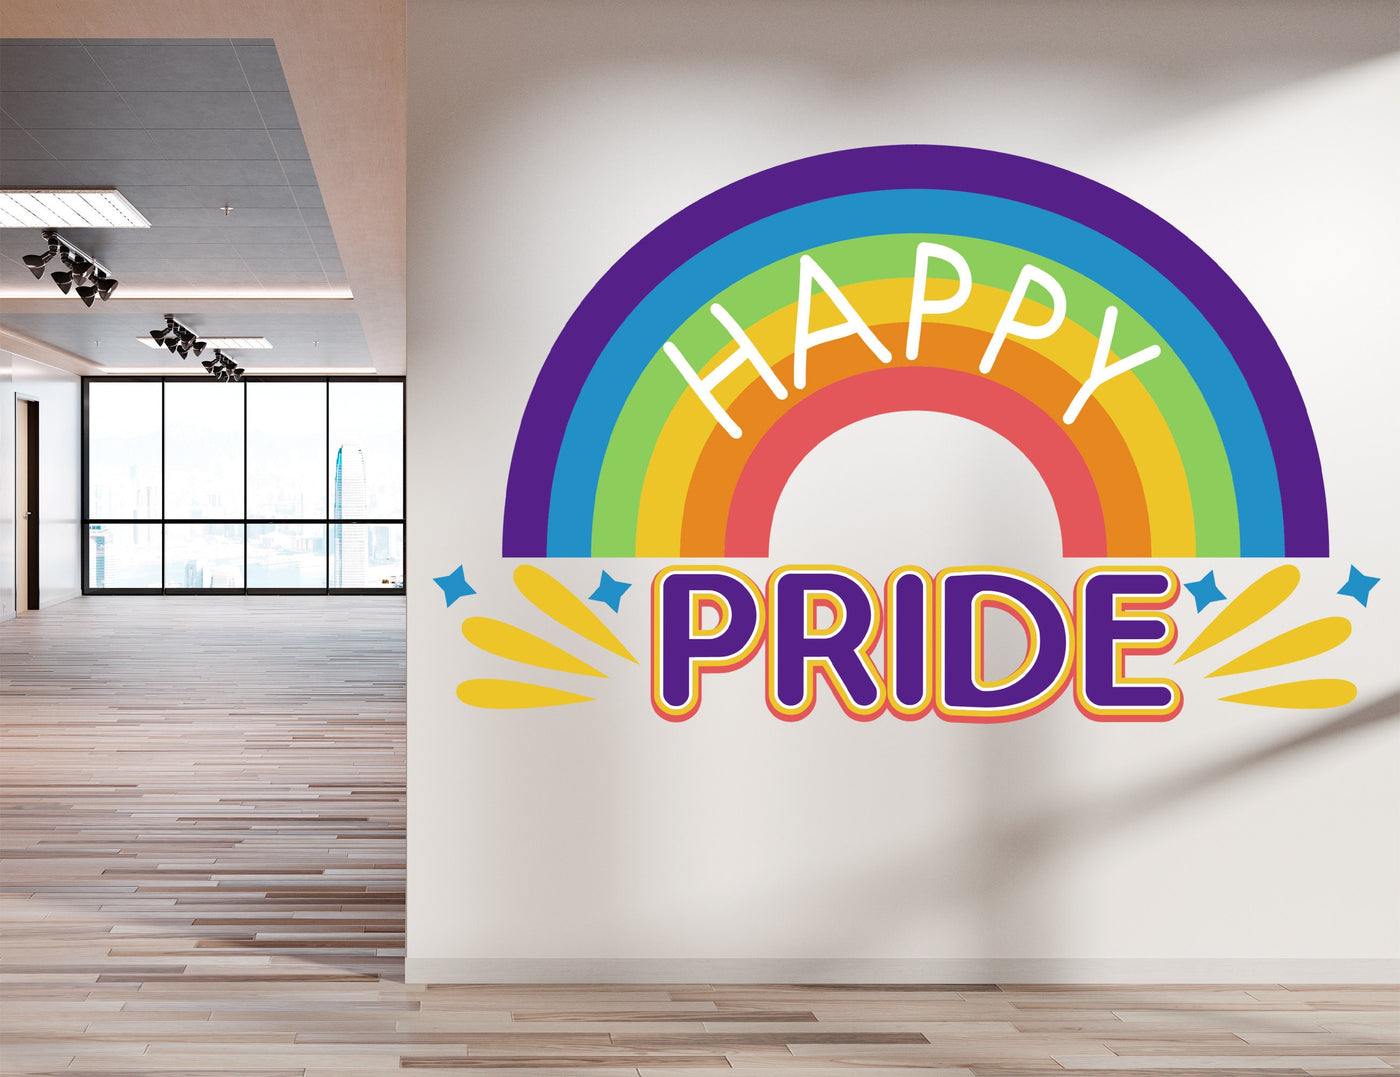 Decoração de decalque de parede do orgulho feliz para dormitório - Adesivos de arco-íris para decoração de quarto - Decalque do orgulho LGBT para escritório - Decoração do mês do orgulho para pátio